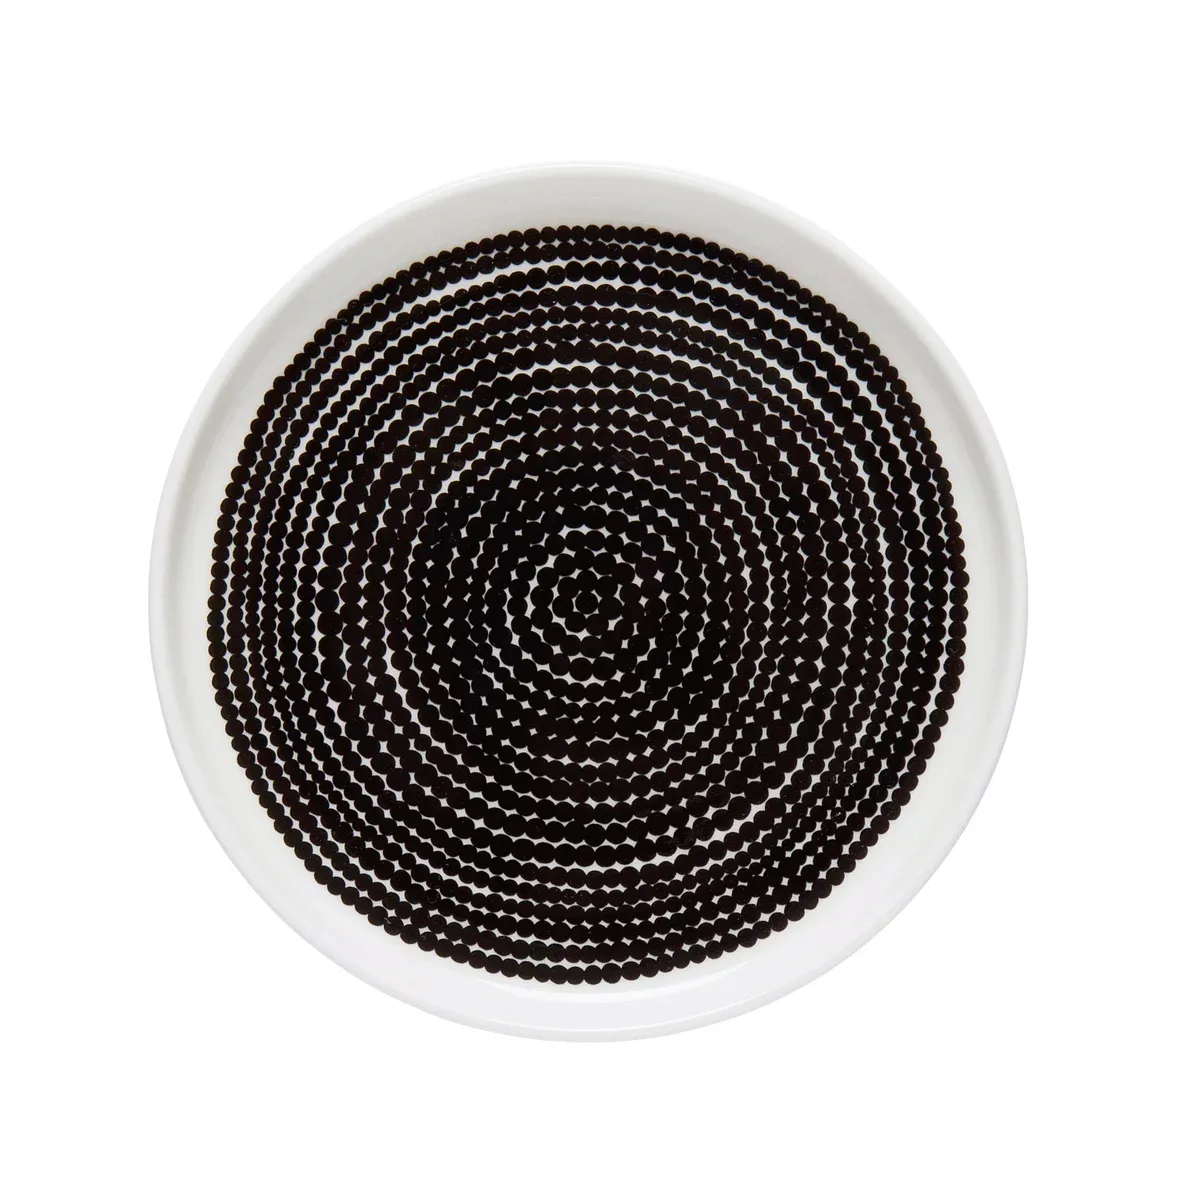 Räsymatto Teller Ø 20cm schwarz-weiß (große Punkte) günstig online kaufen